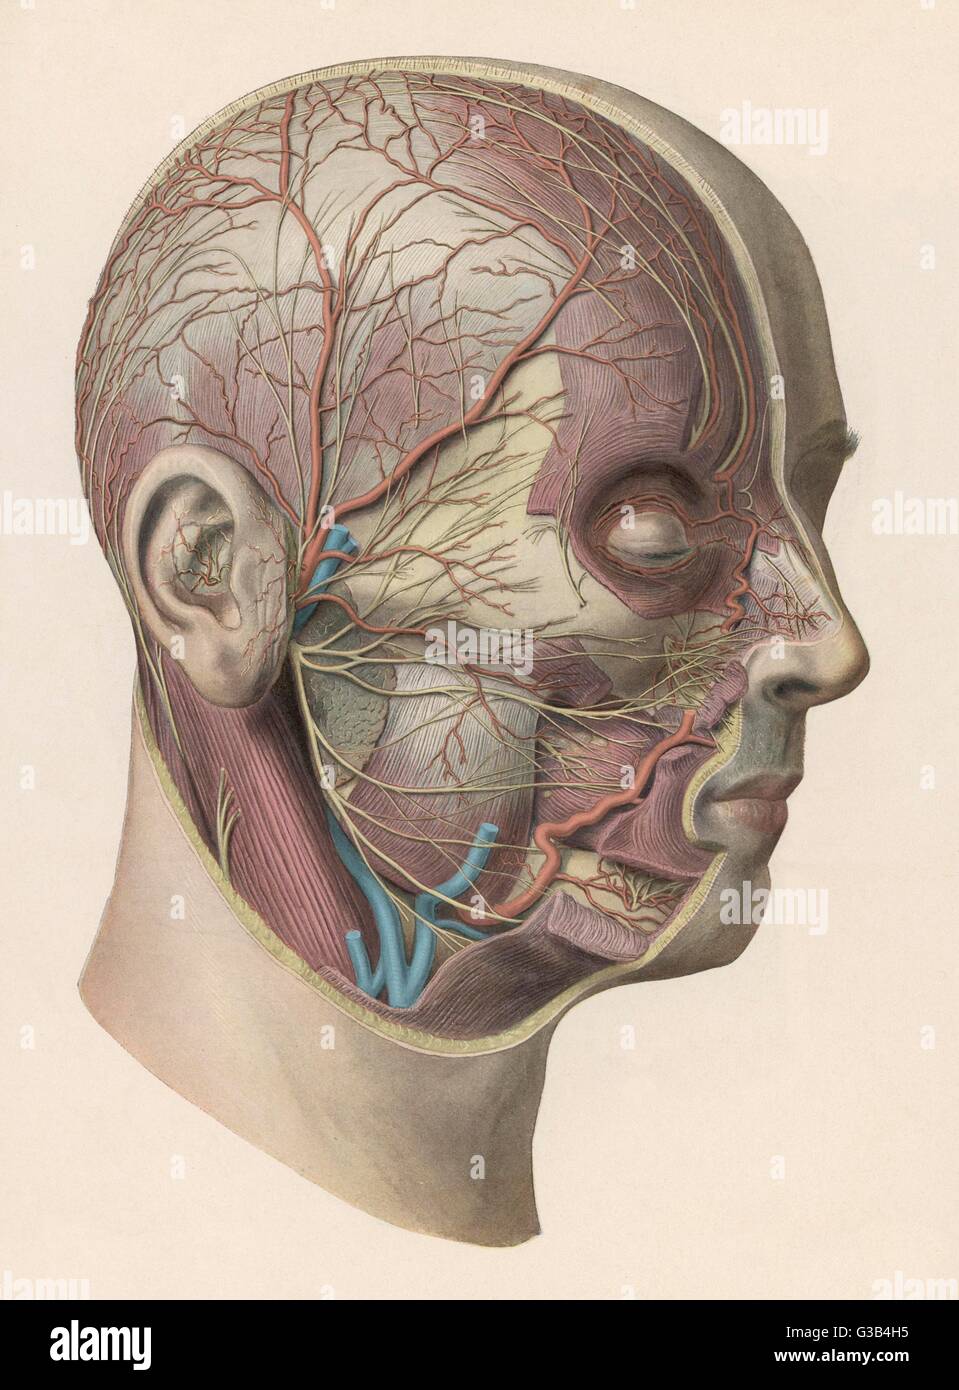 Detaillierten Diagramm zeigt Muskeln und Venen in den Kopf Datum: um 1900 Stockfoto